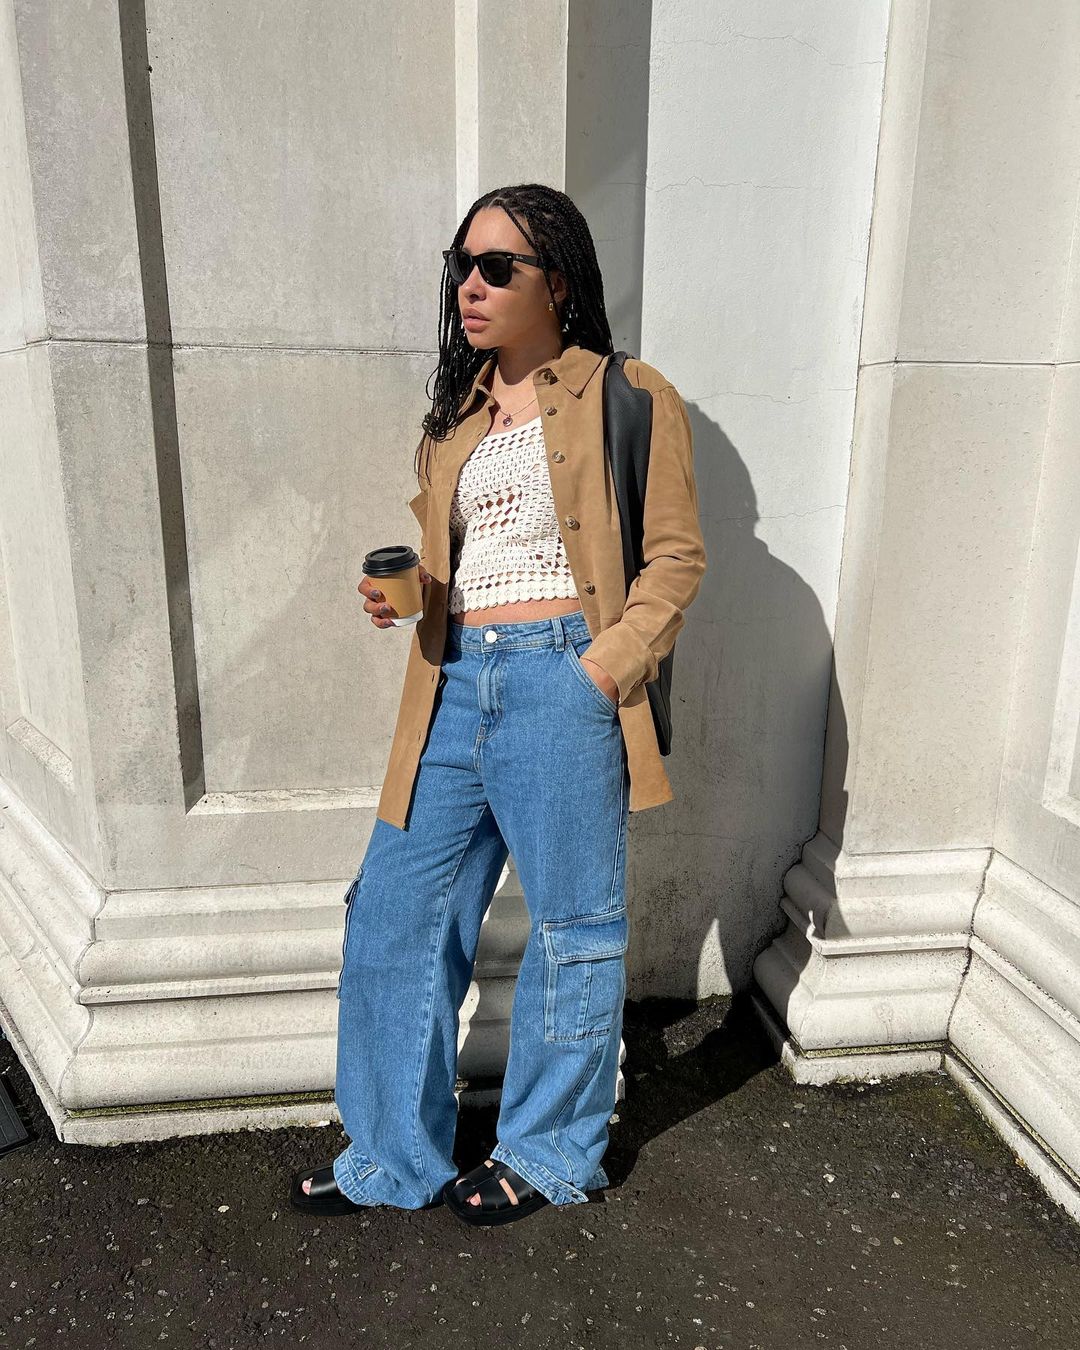 Summer 2022 Jeans Trends: @taniceelizabeth wears a pair of cargo jeans